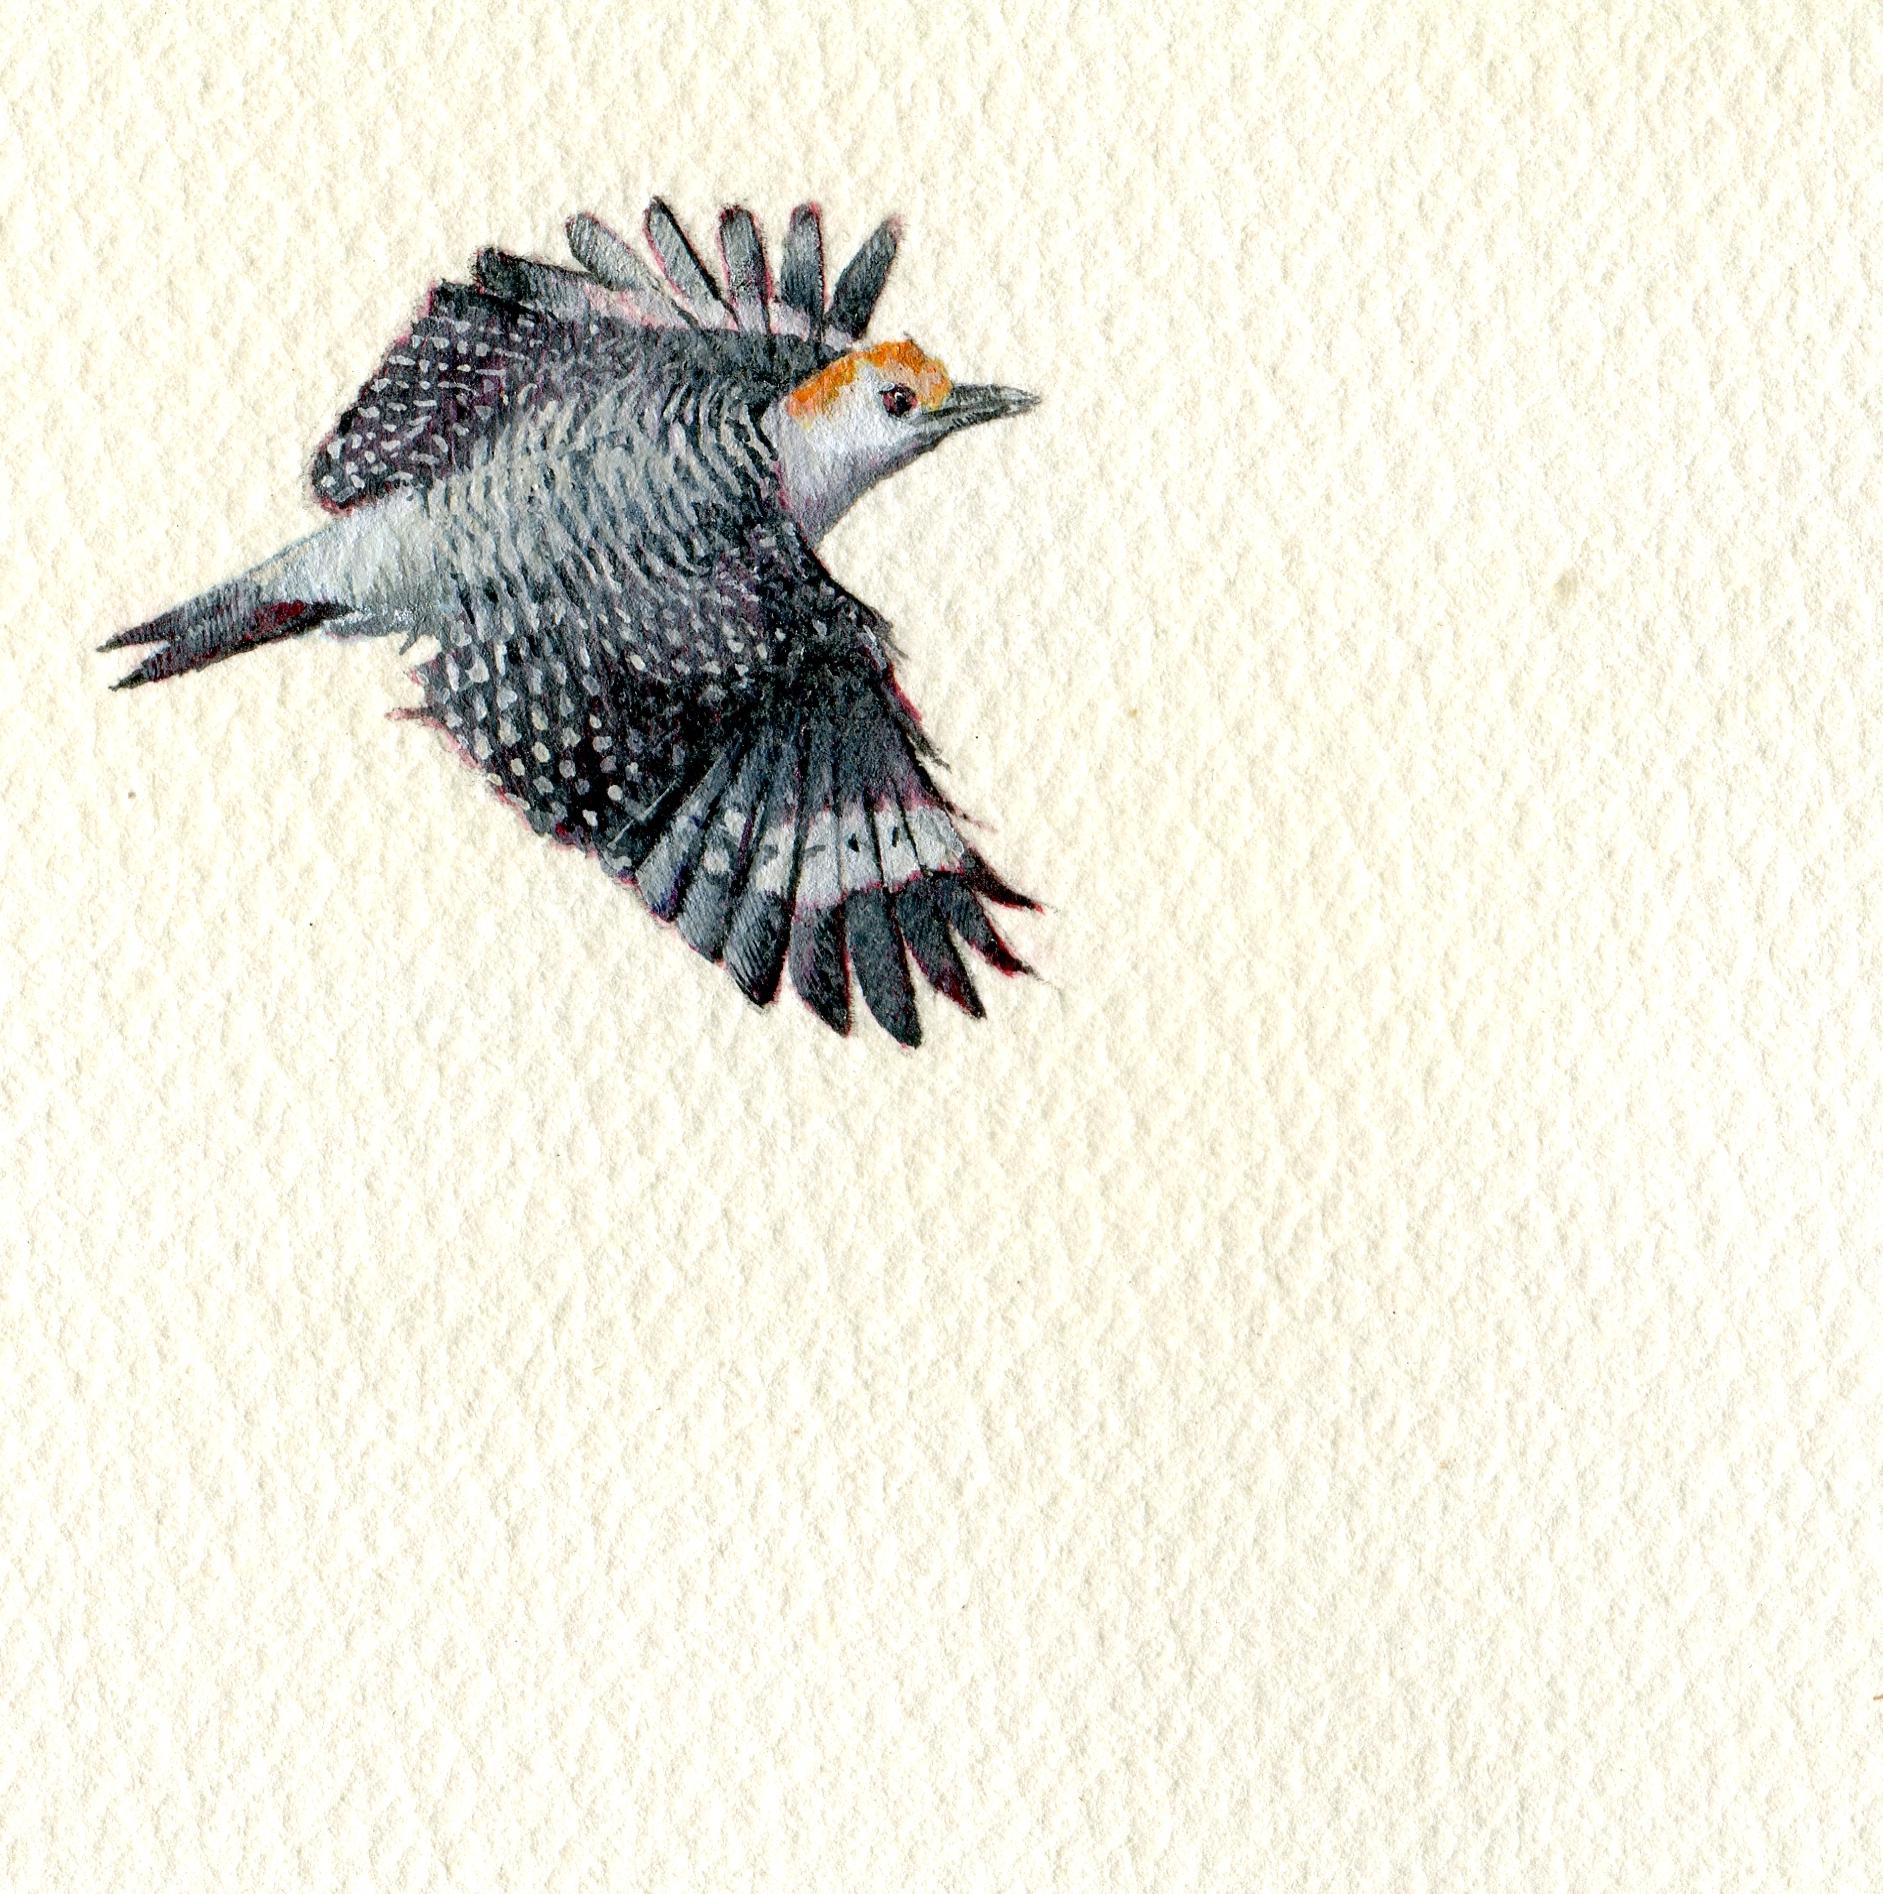 Goldfrontierter Woodpecker, realistisches Vogelporträt in Gouache auf Papier, 2020